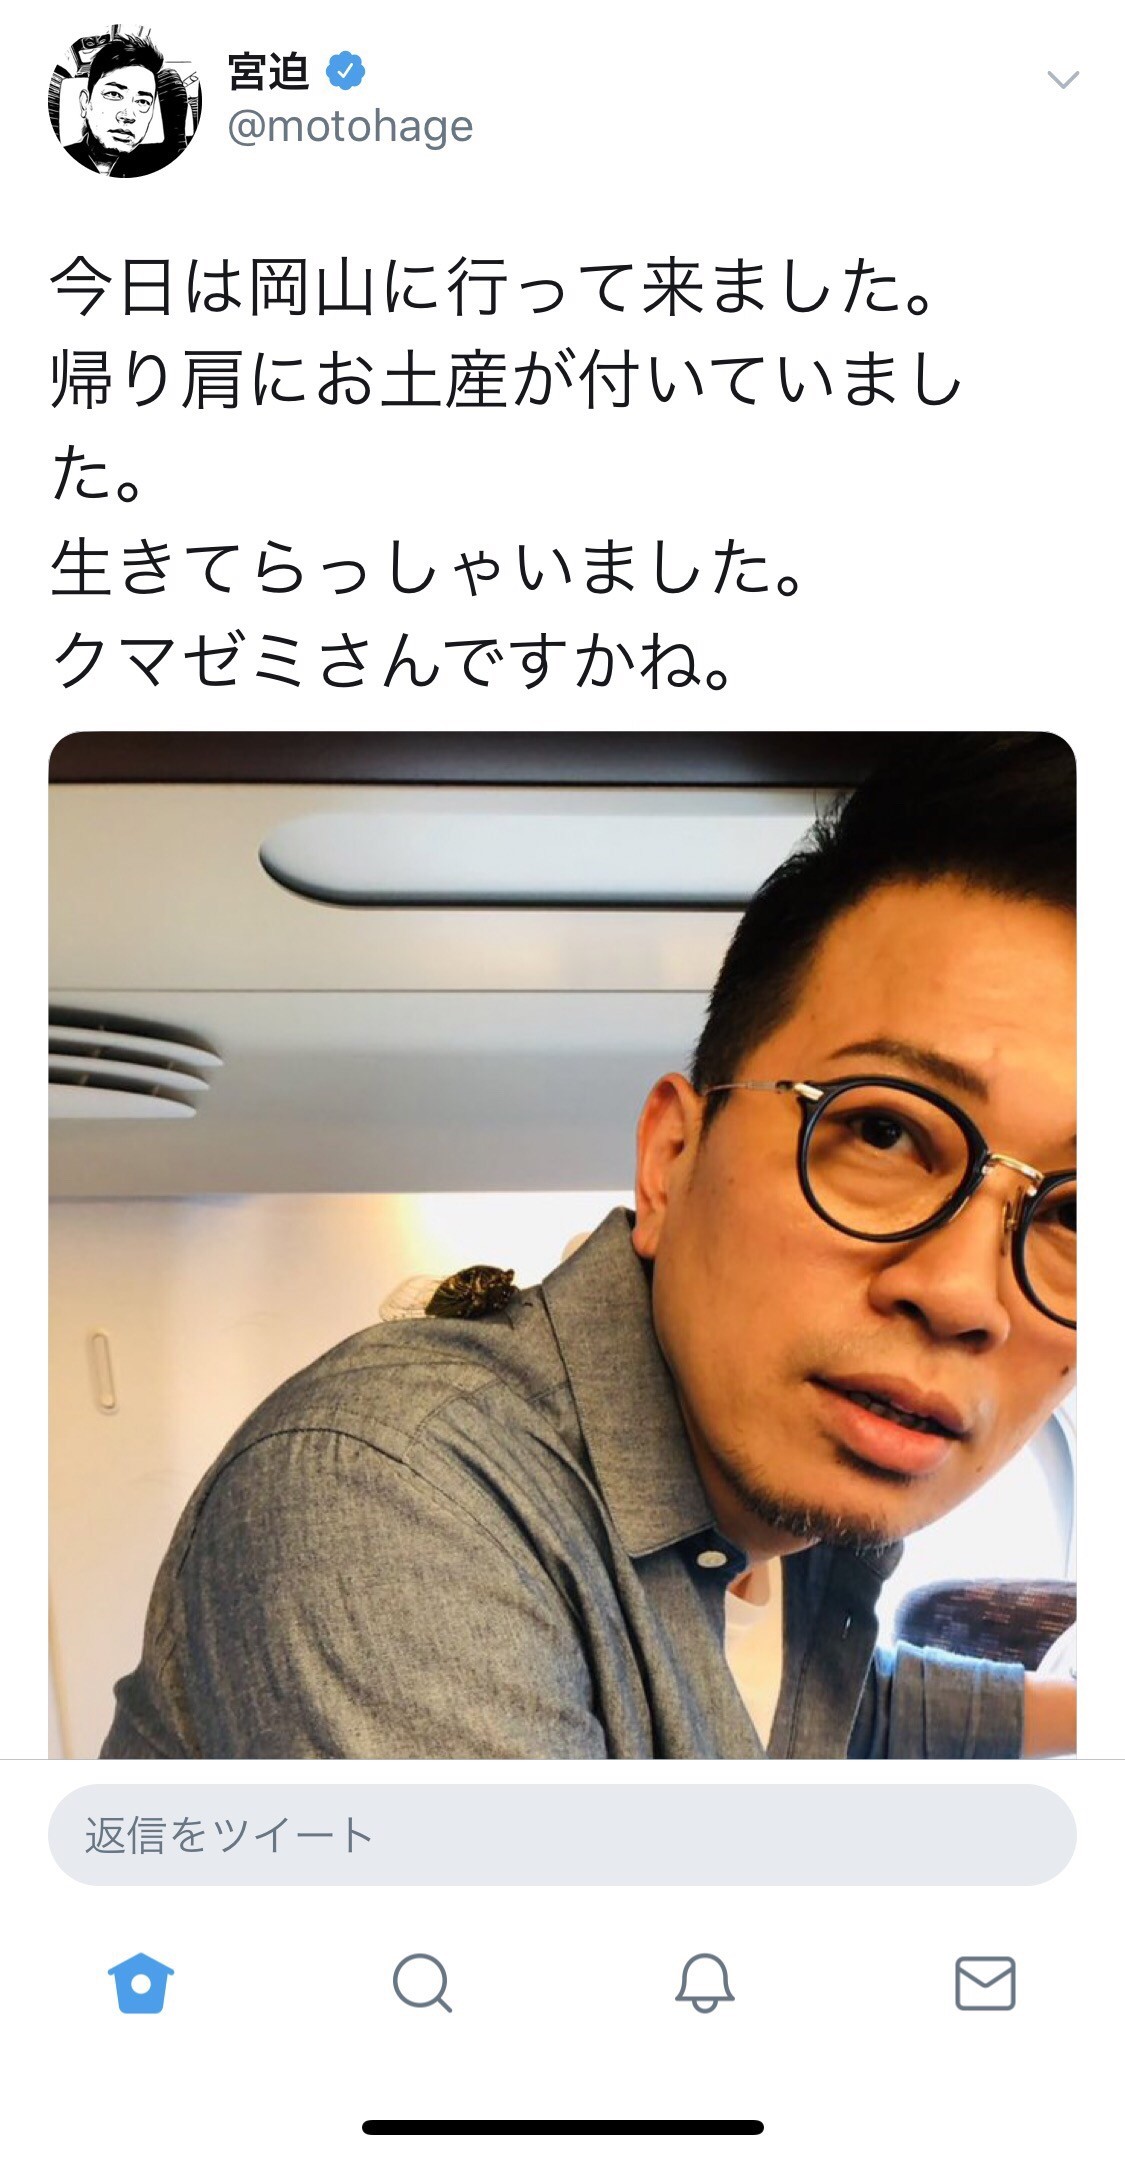 【Breaking news】 Mr. Miyasako, update Twitter